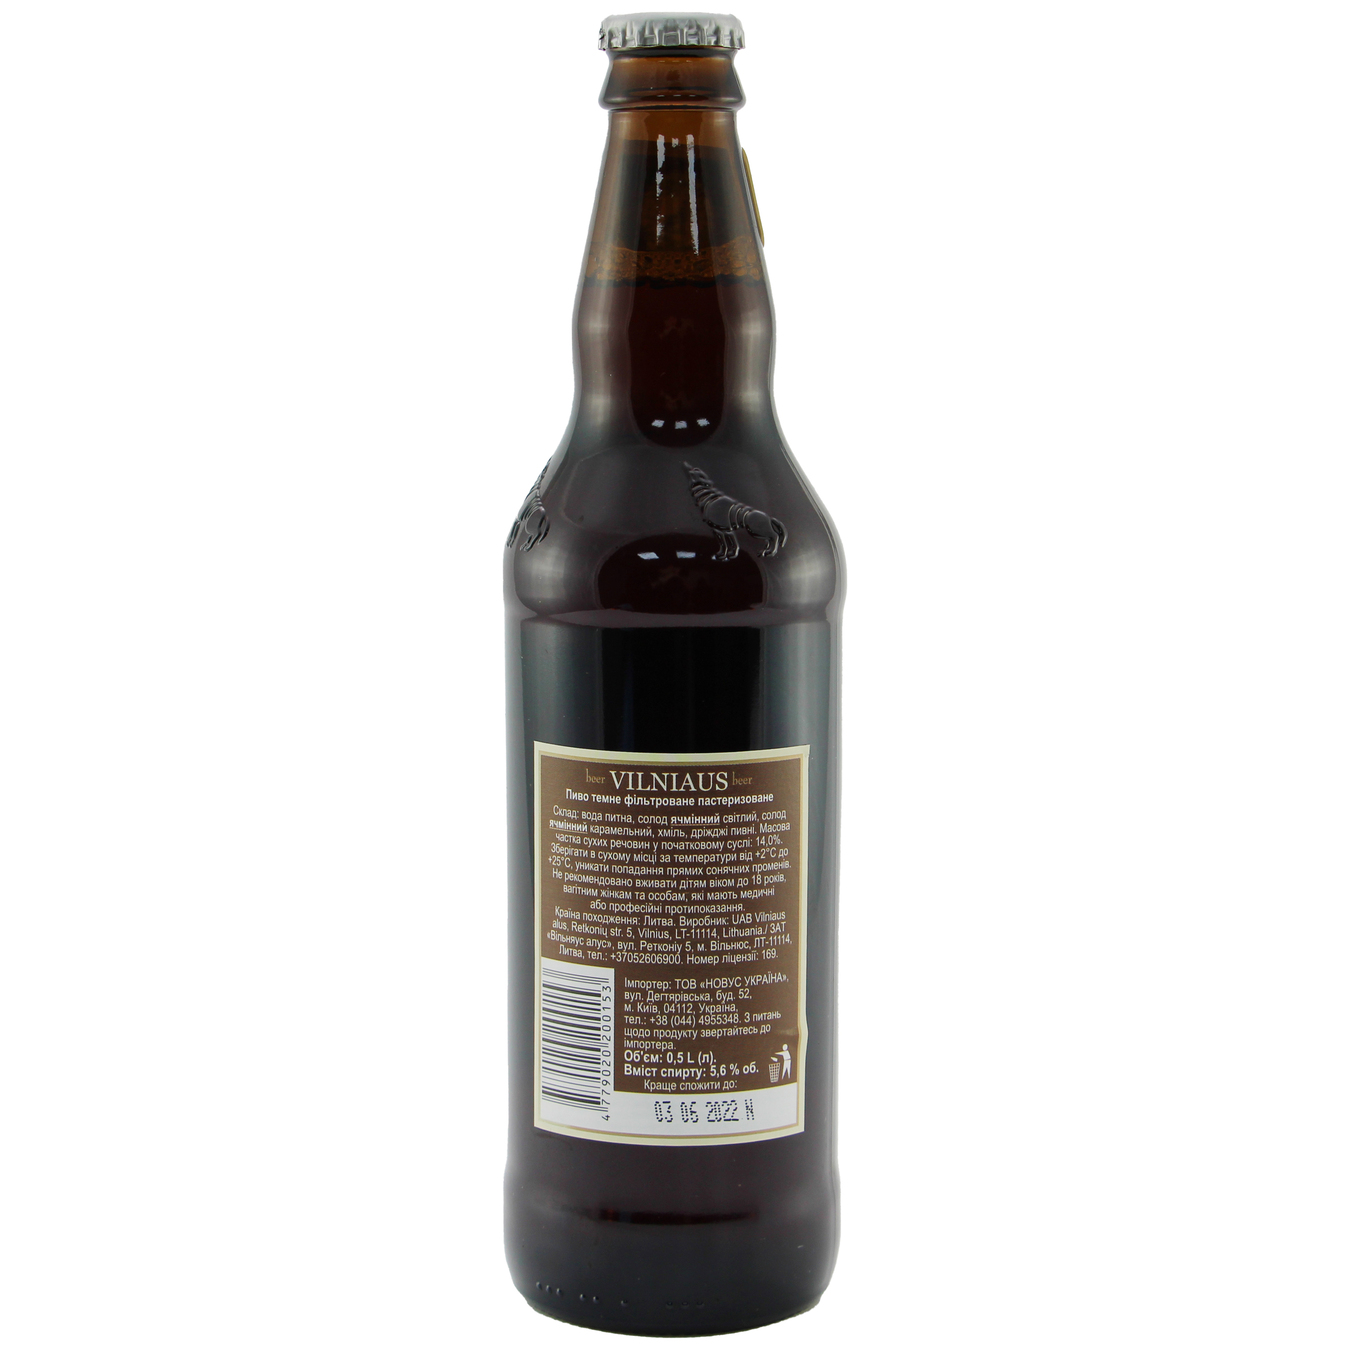 Vilniaus Alus Dark unfiltered dark beer 5,6% 0,5l 2